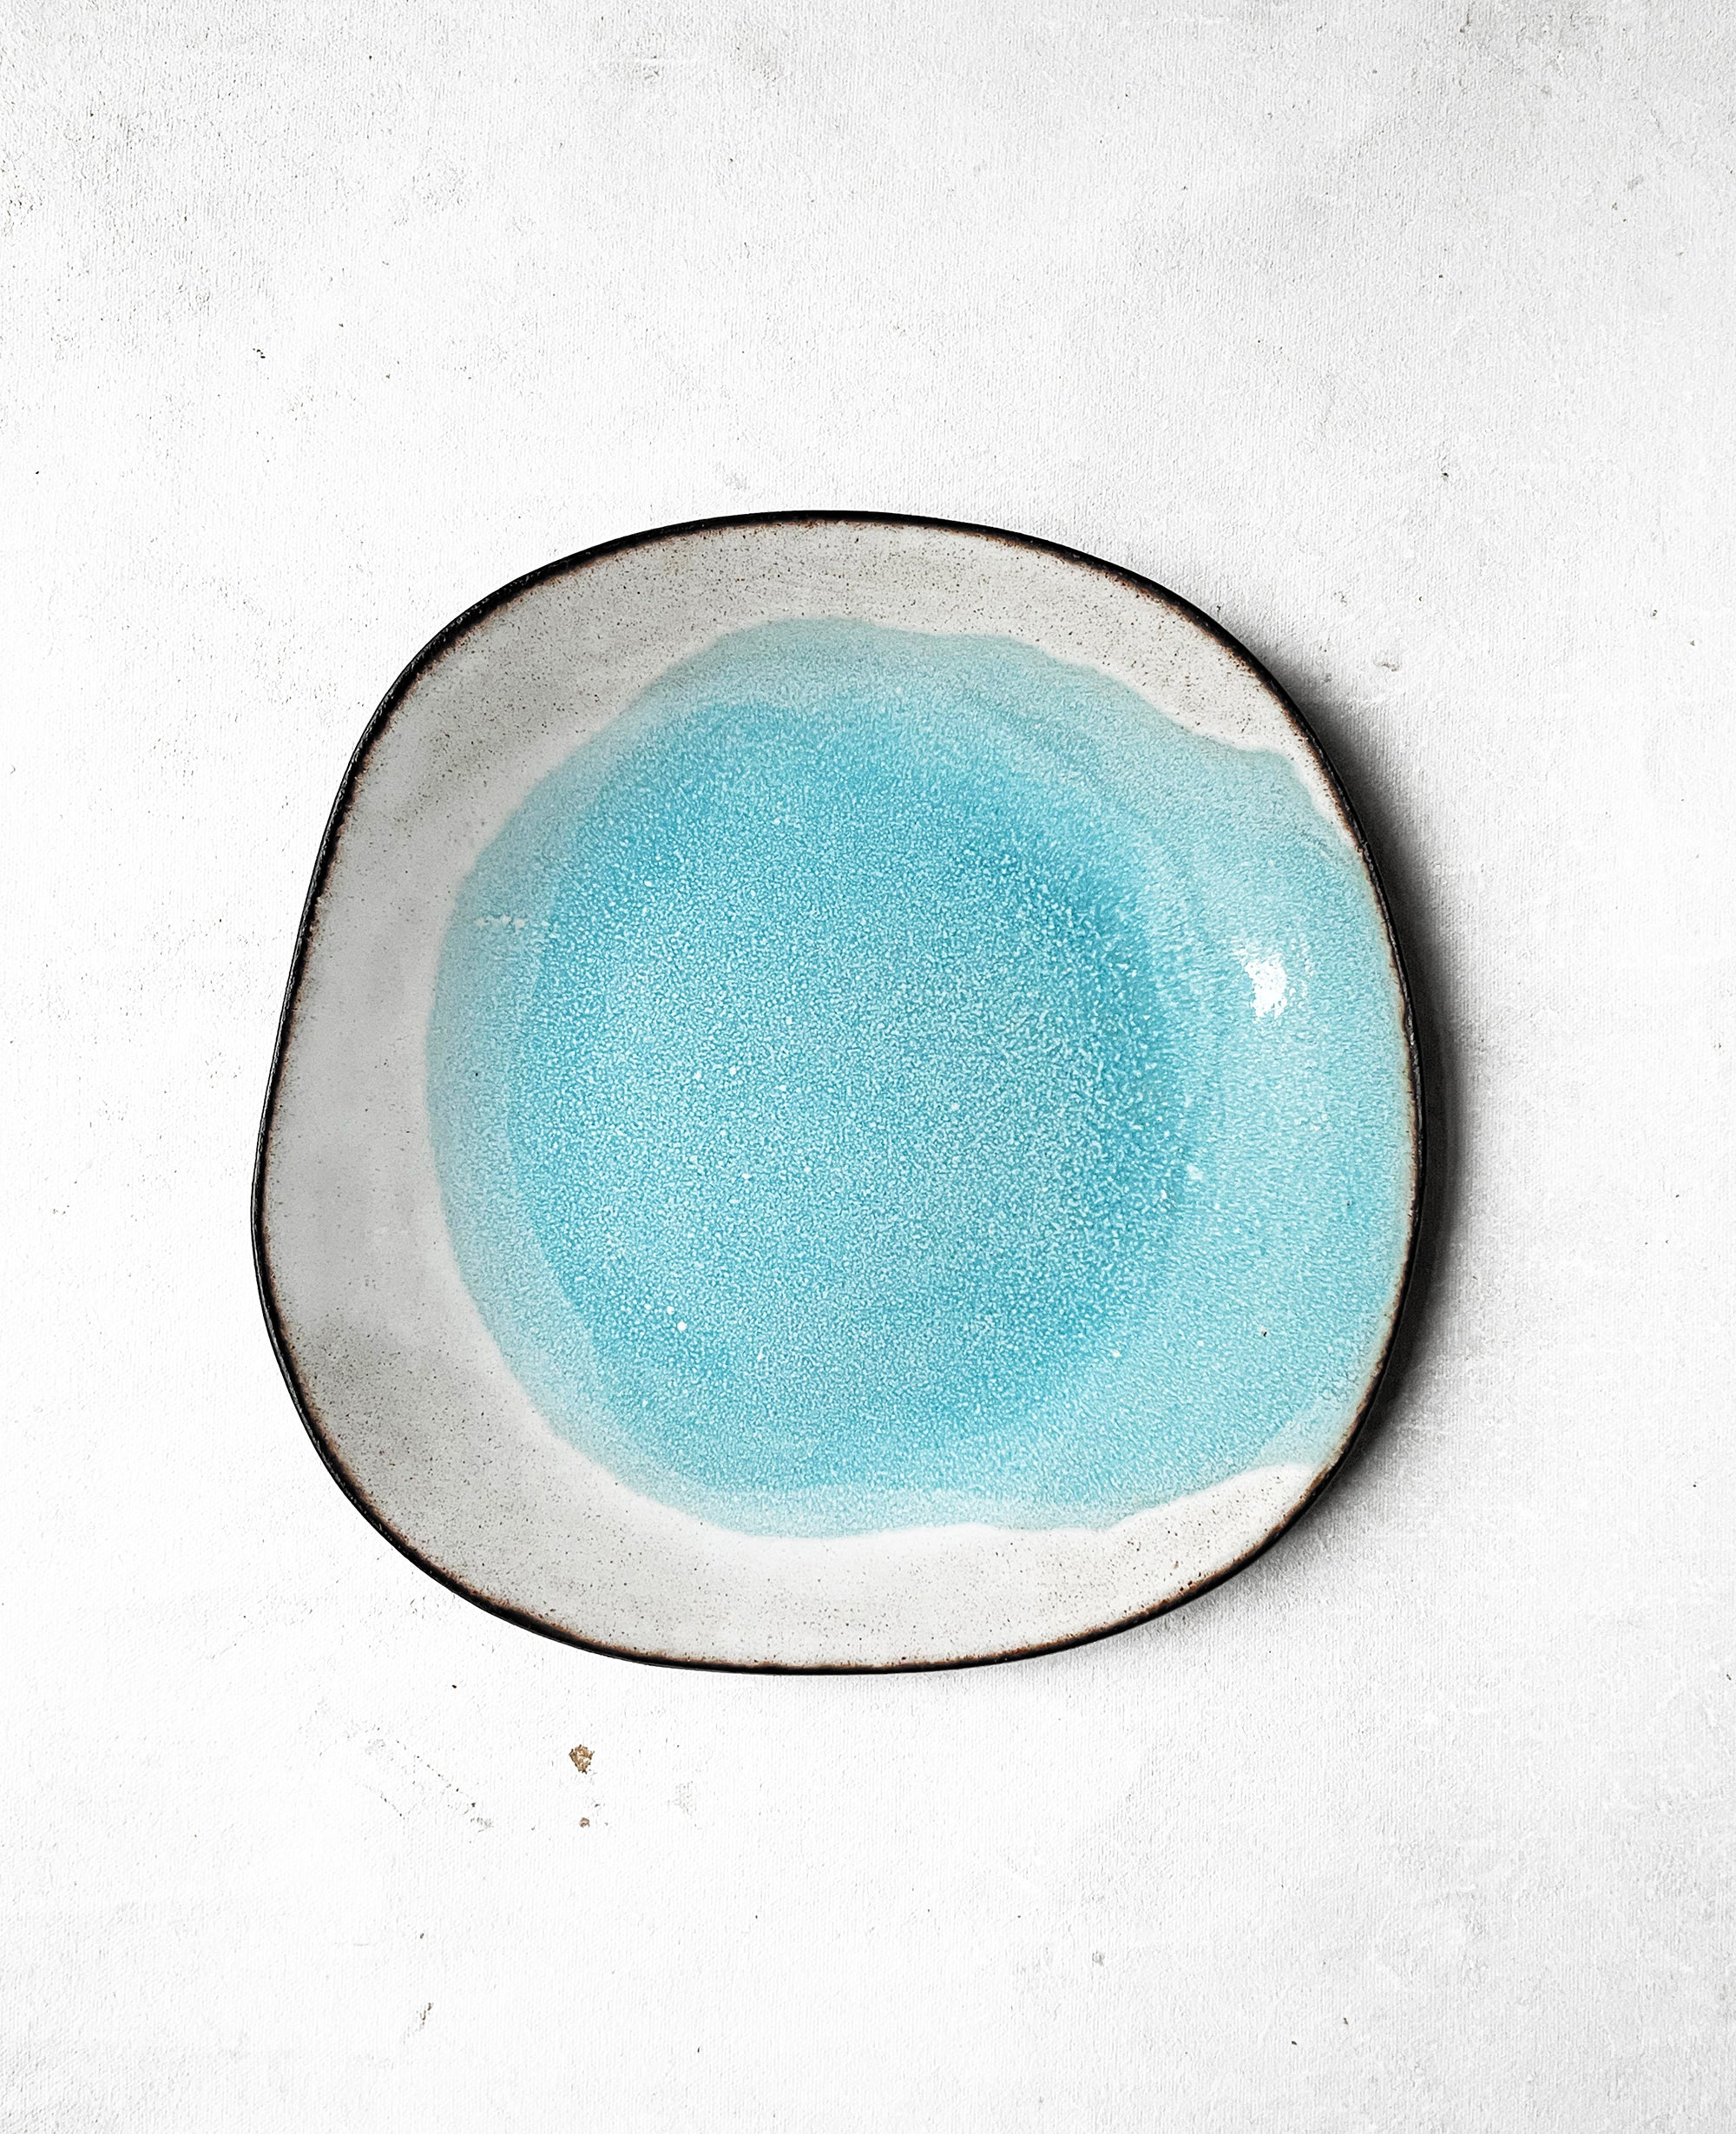 Medium Plate in Bright Blue Aquarelle